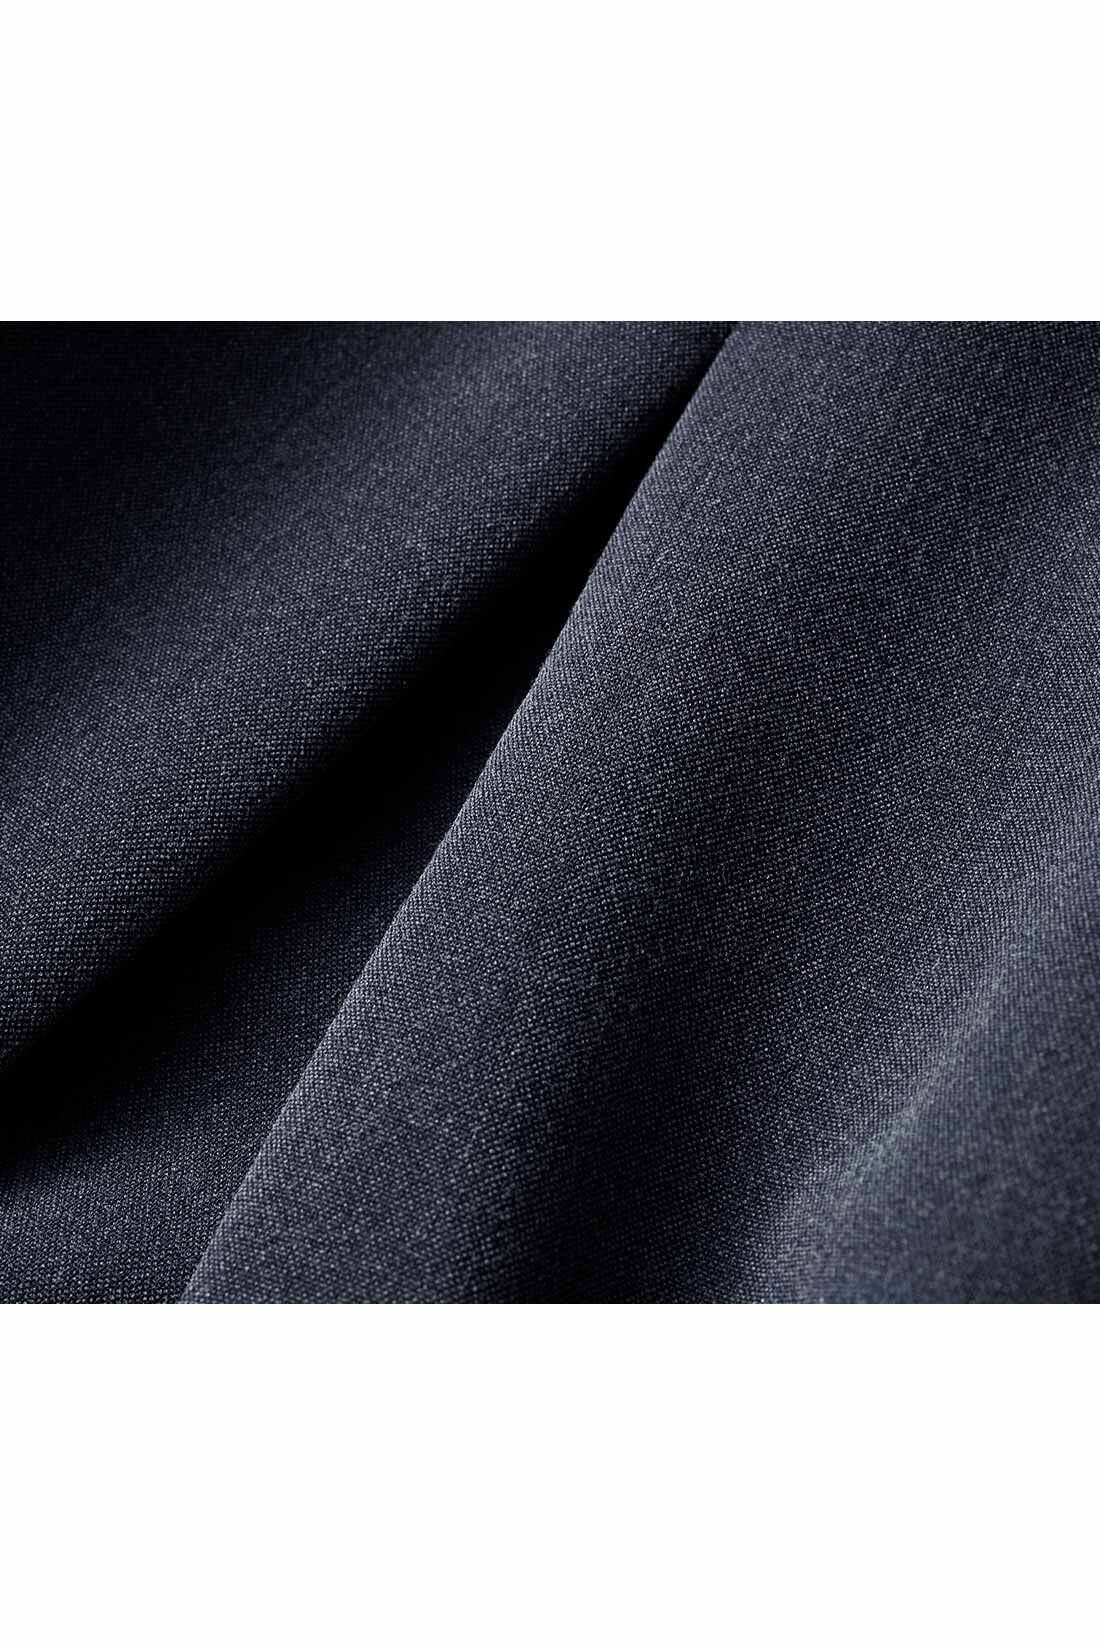 THREE FIFTY STANDARD|THREE FIFTY STANDARD　ボックスプリーツのスカート〈チャコール〉|さらりと滑らかで、きれいな落ち感のあるレーヨン混のストレッチ素材を使用。